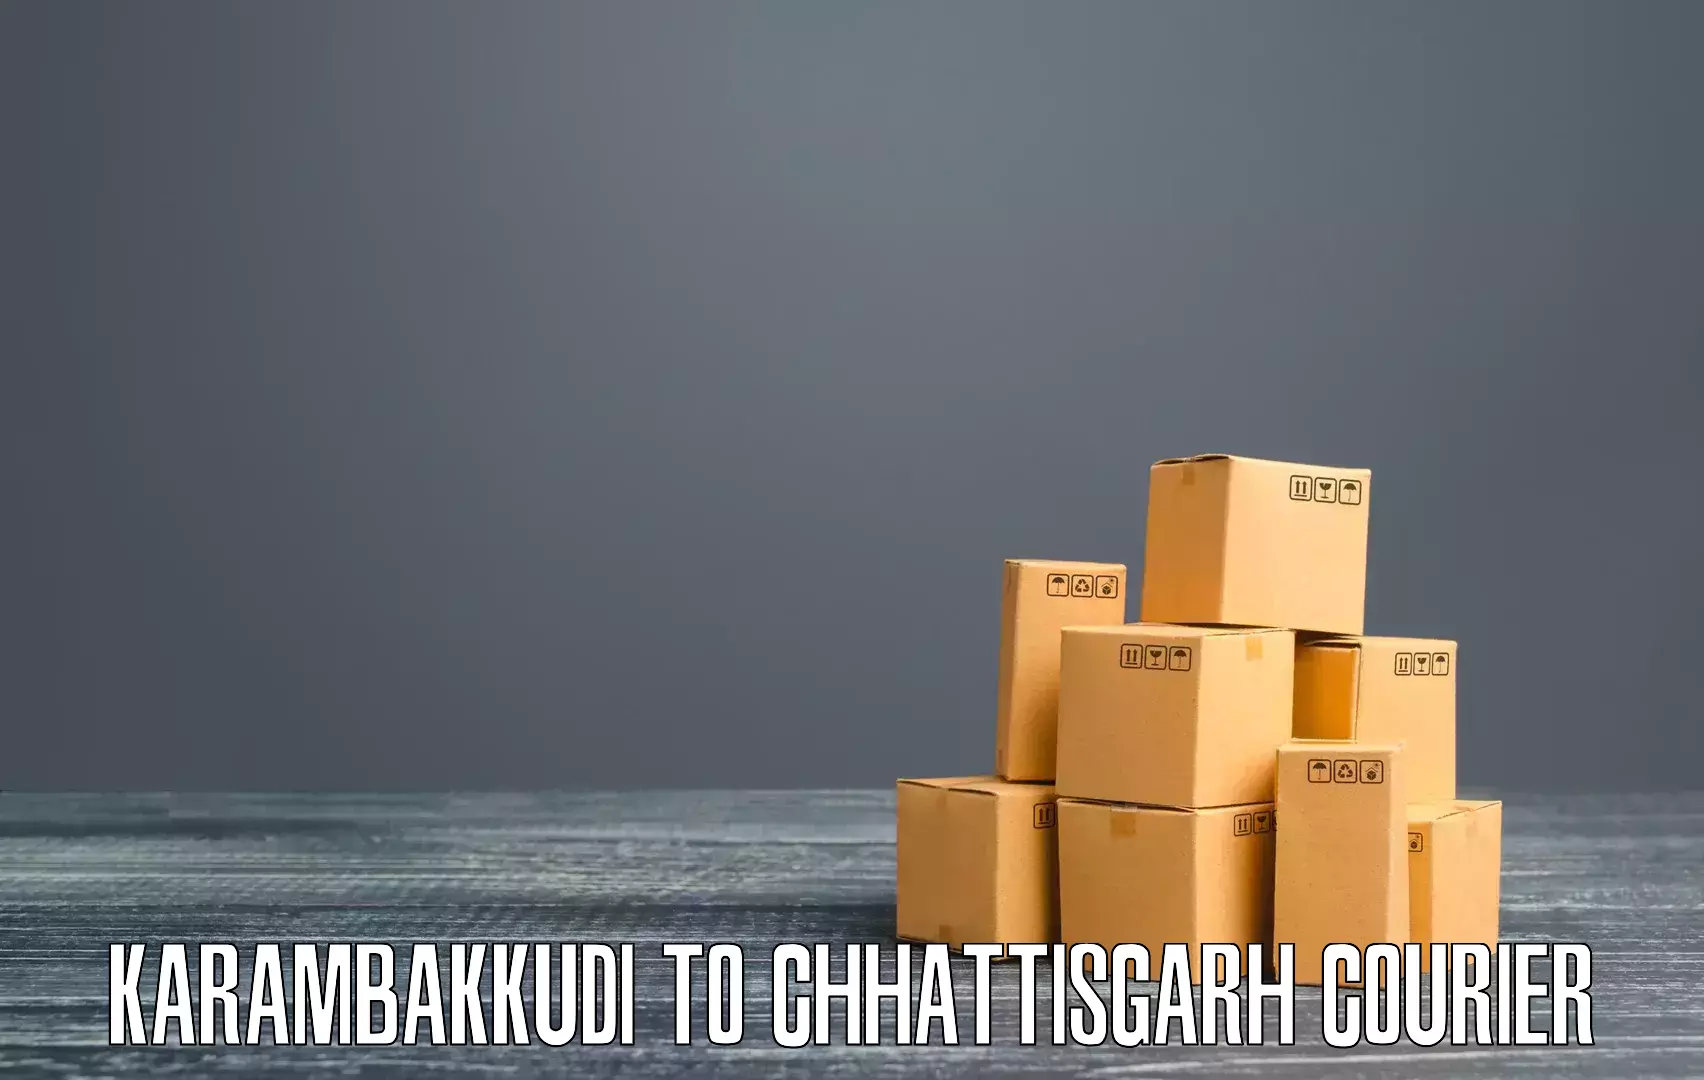 Automated shipping processes Karambakkudi to Janjgir Champa